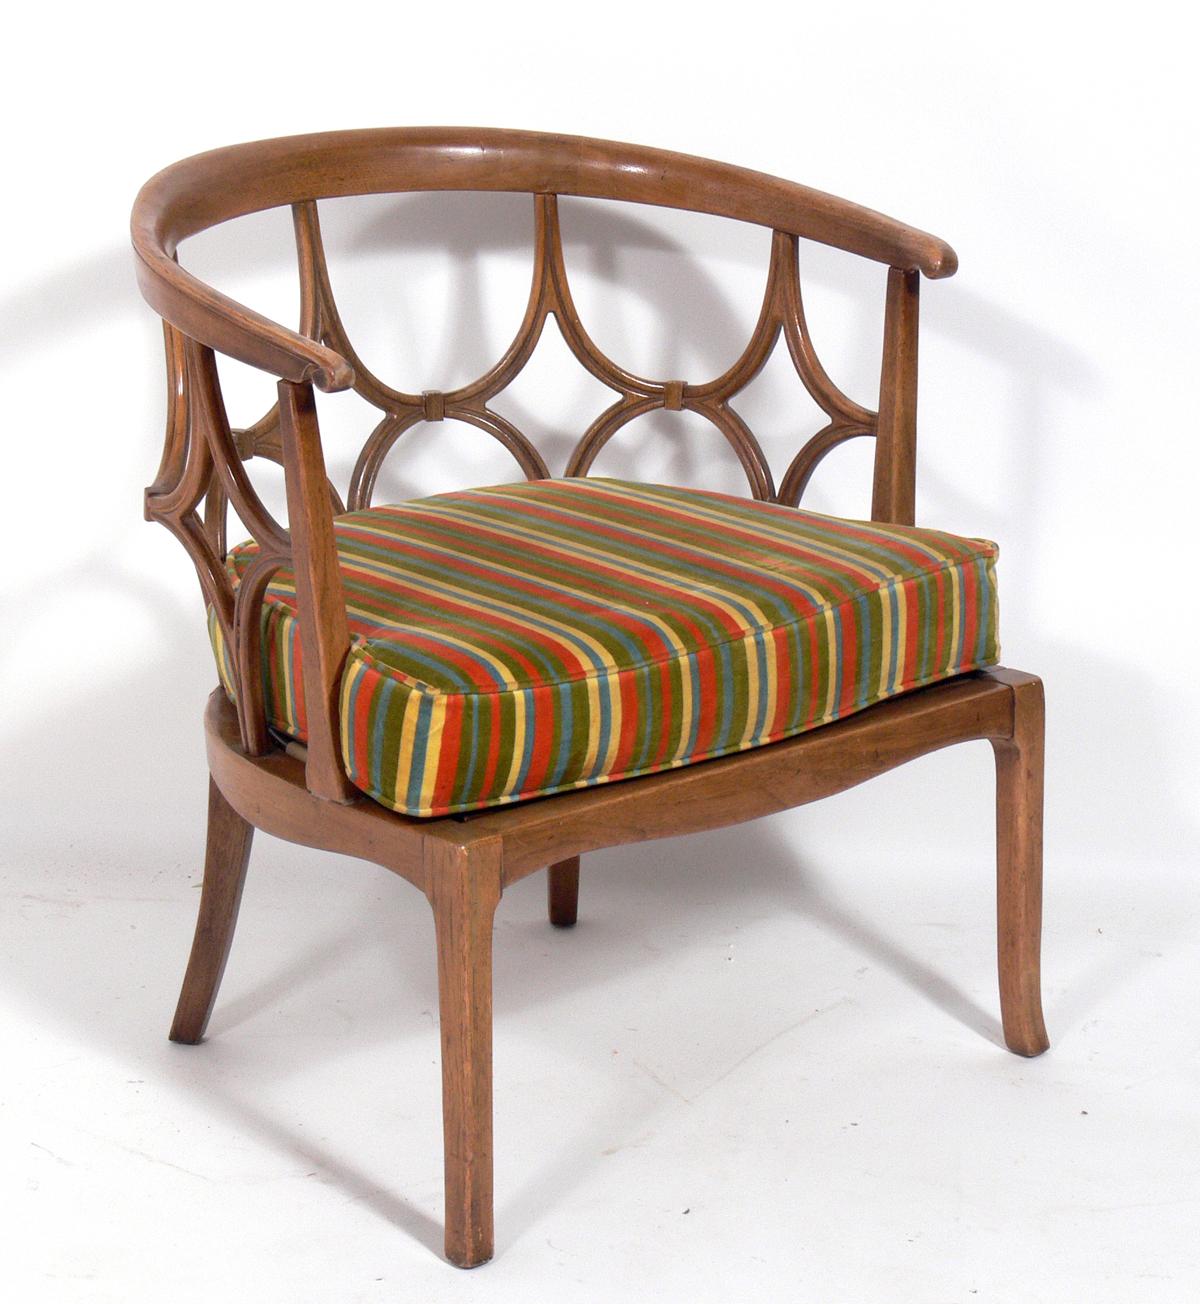 Paire de chaises sculpturales à dossier fretté, design attribué à John Lubberts et Lambert Muller, et fabriqué par Tomlinson, américain, vers les années 1960. Ces chaises sont actuellement en cours de finition et de retapissage et peuvent être